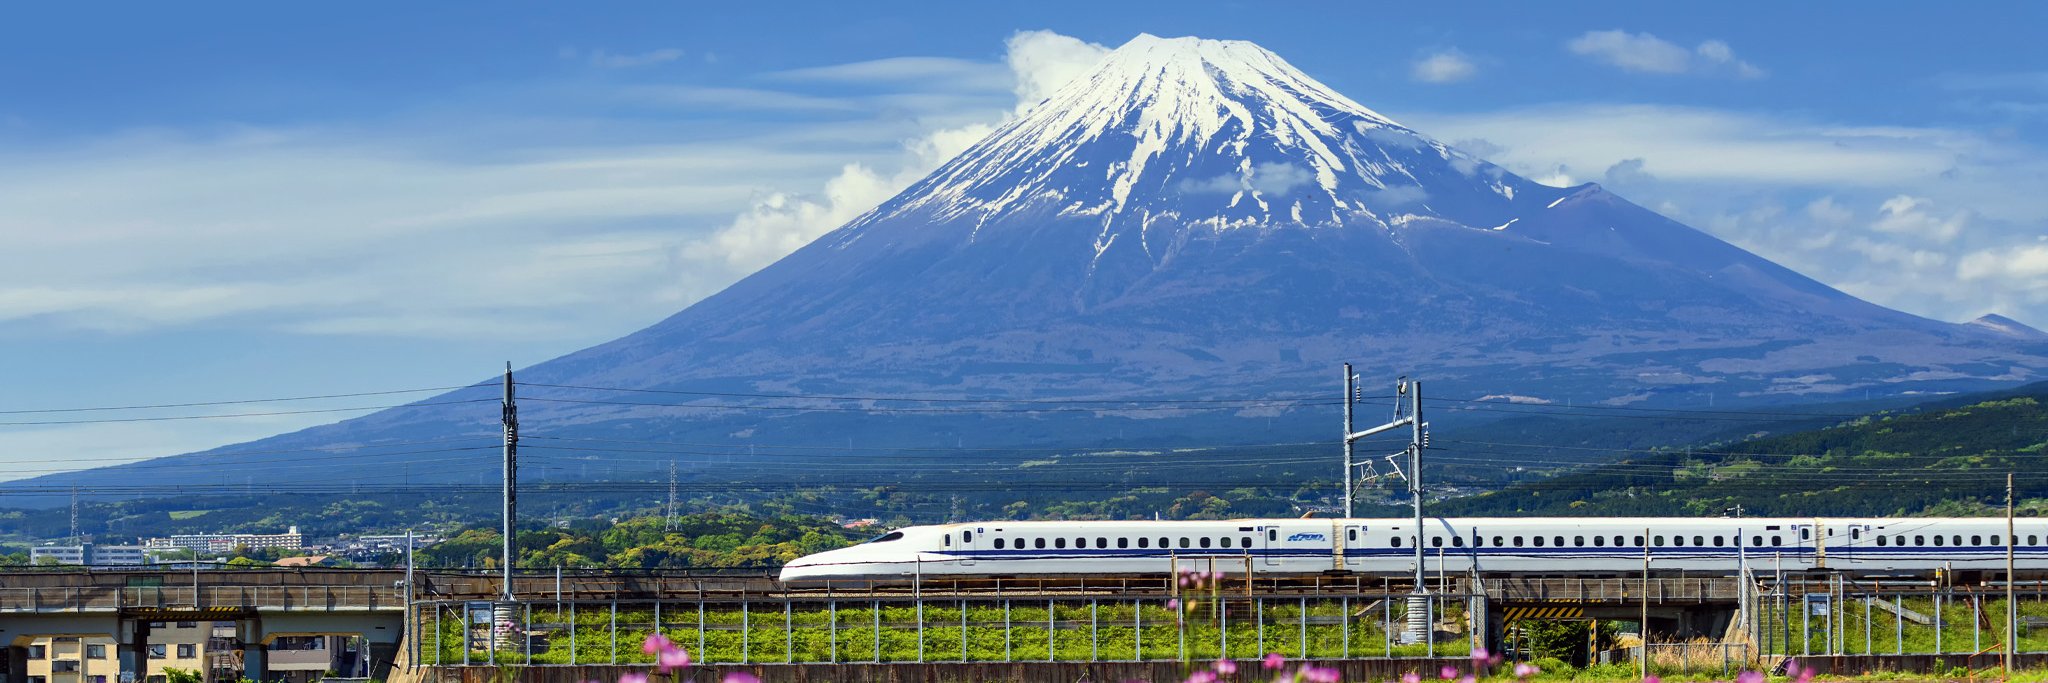 Gutes Timing und ein Platz auf der rechten Zugseite sind wichtig,um den berühmten Fuji beim Vorbeifahren zu sehen.